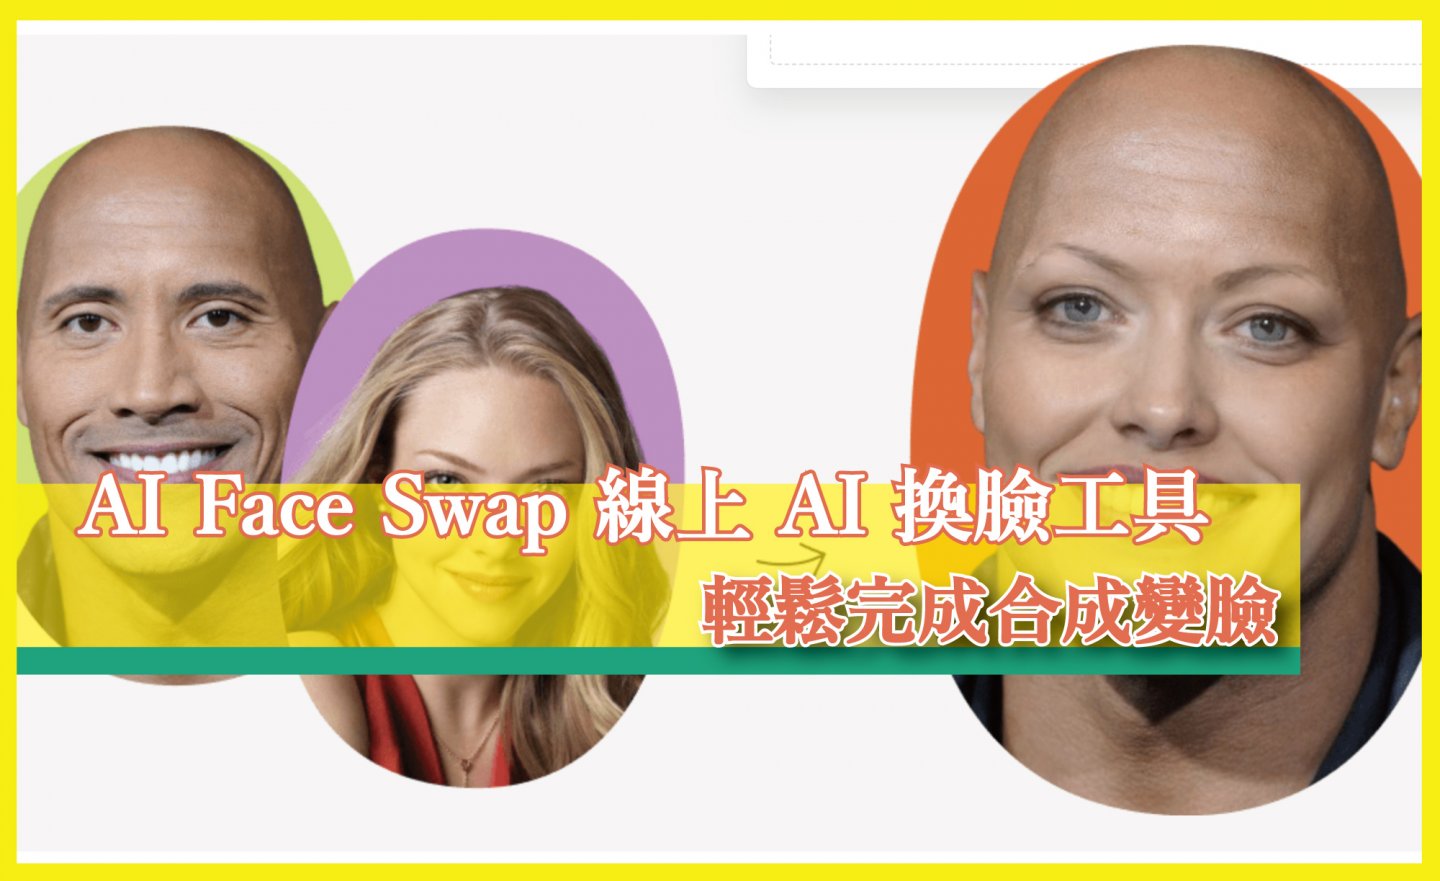 【免費】AI Face Swap 線上 AI 換臉工具，輕鬆完成變臉、換身體